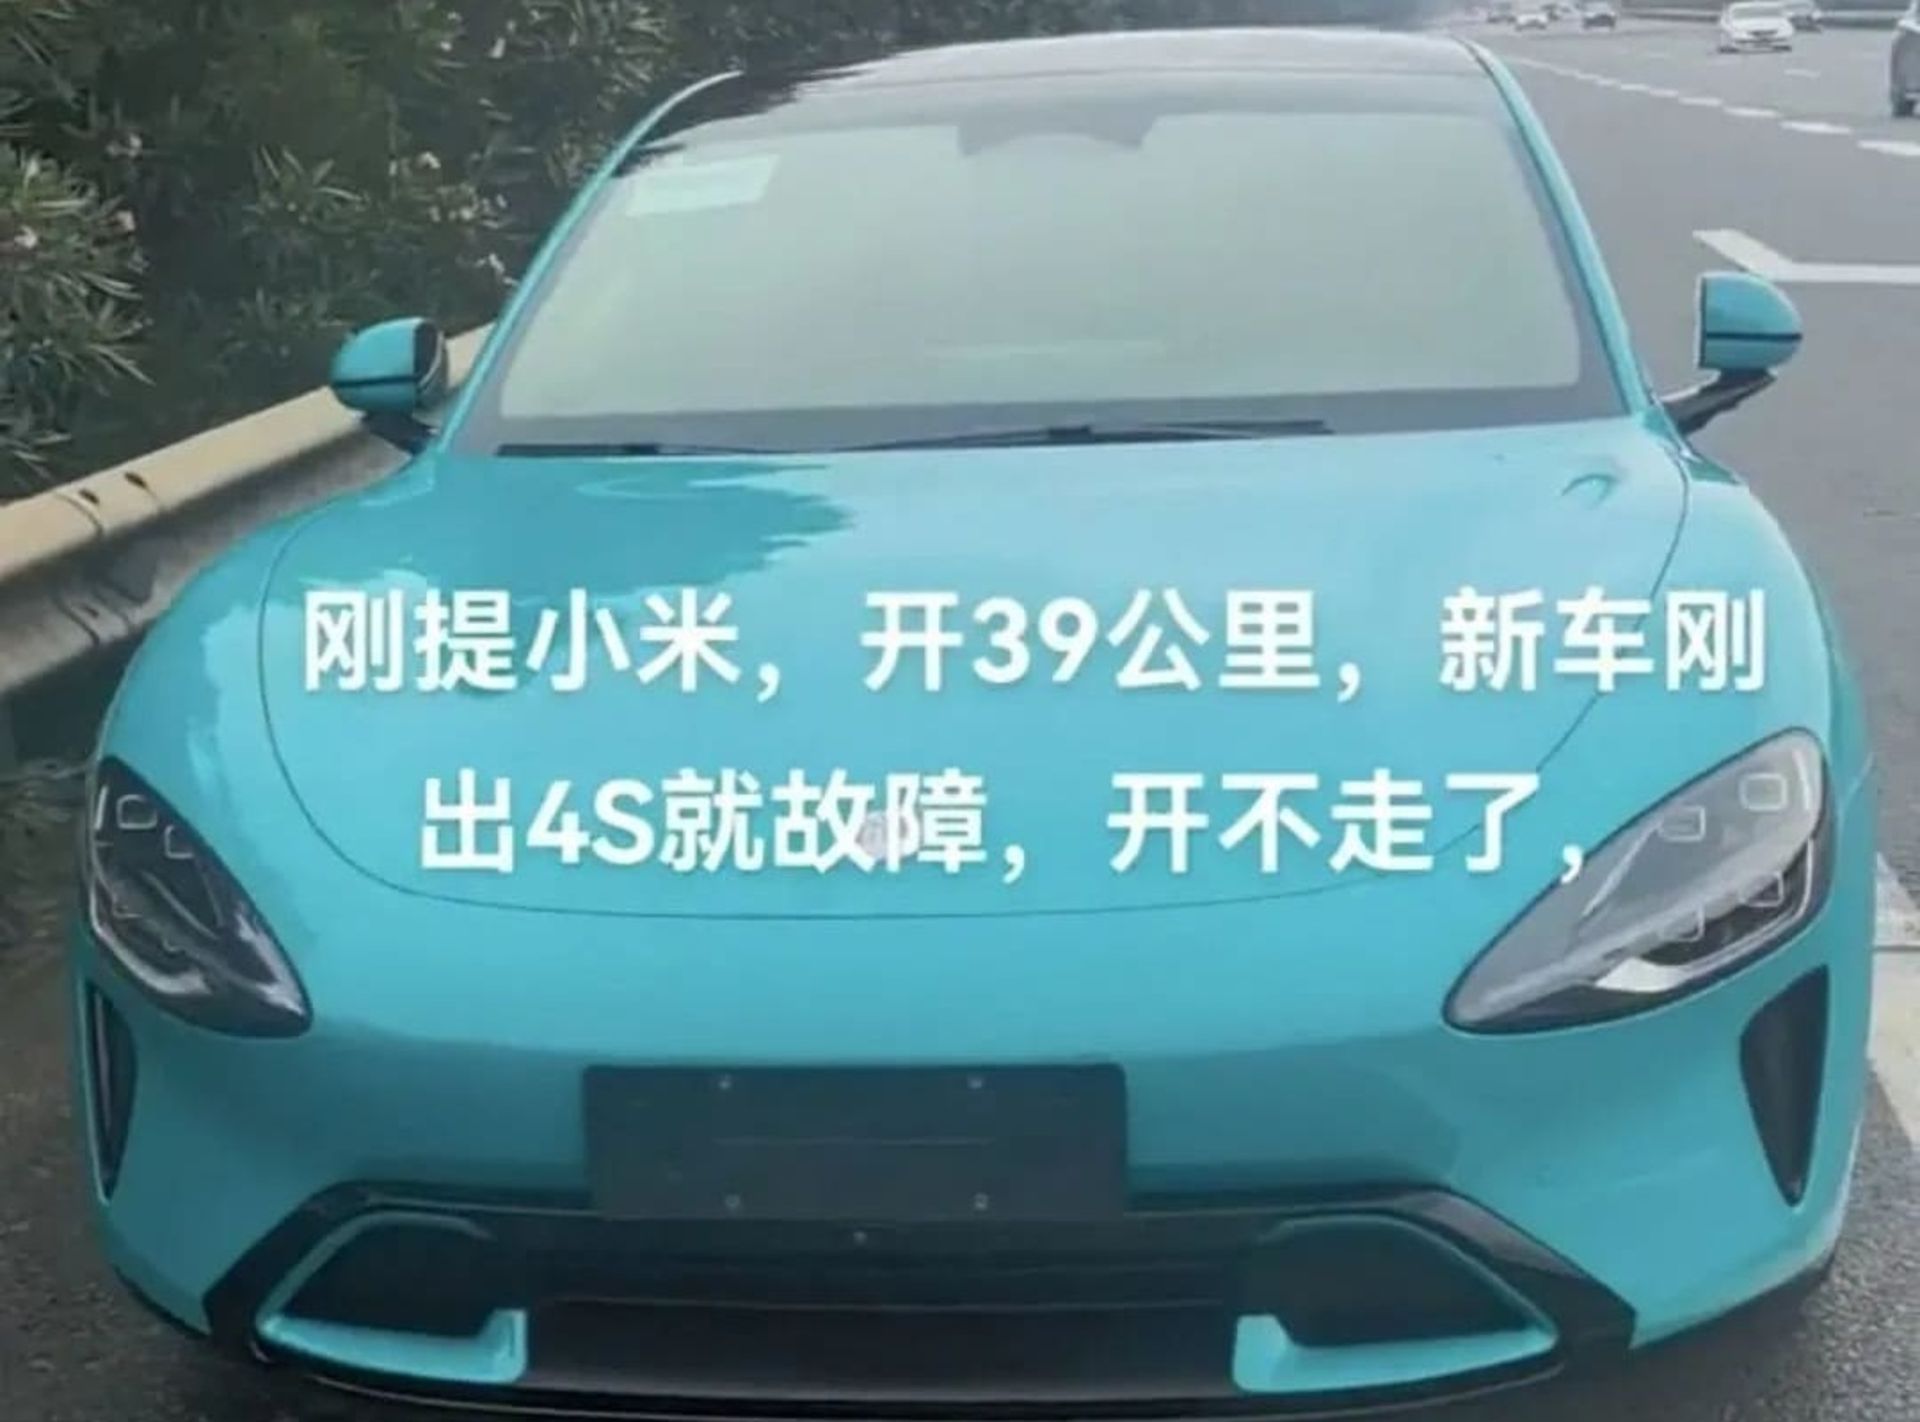 خودرو شیائومی SU7 که دچار نقص فنی شده است